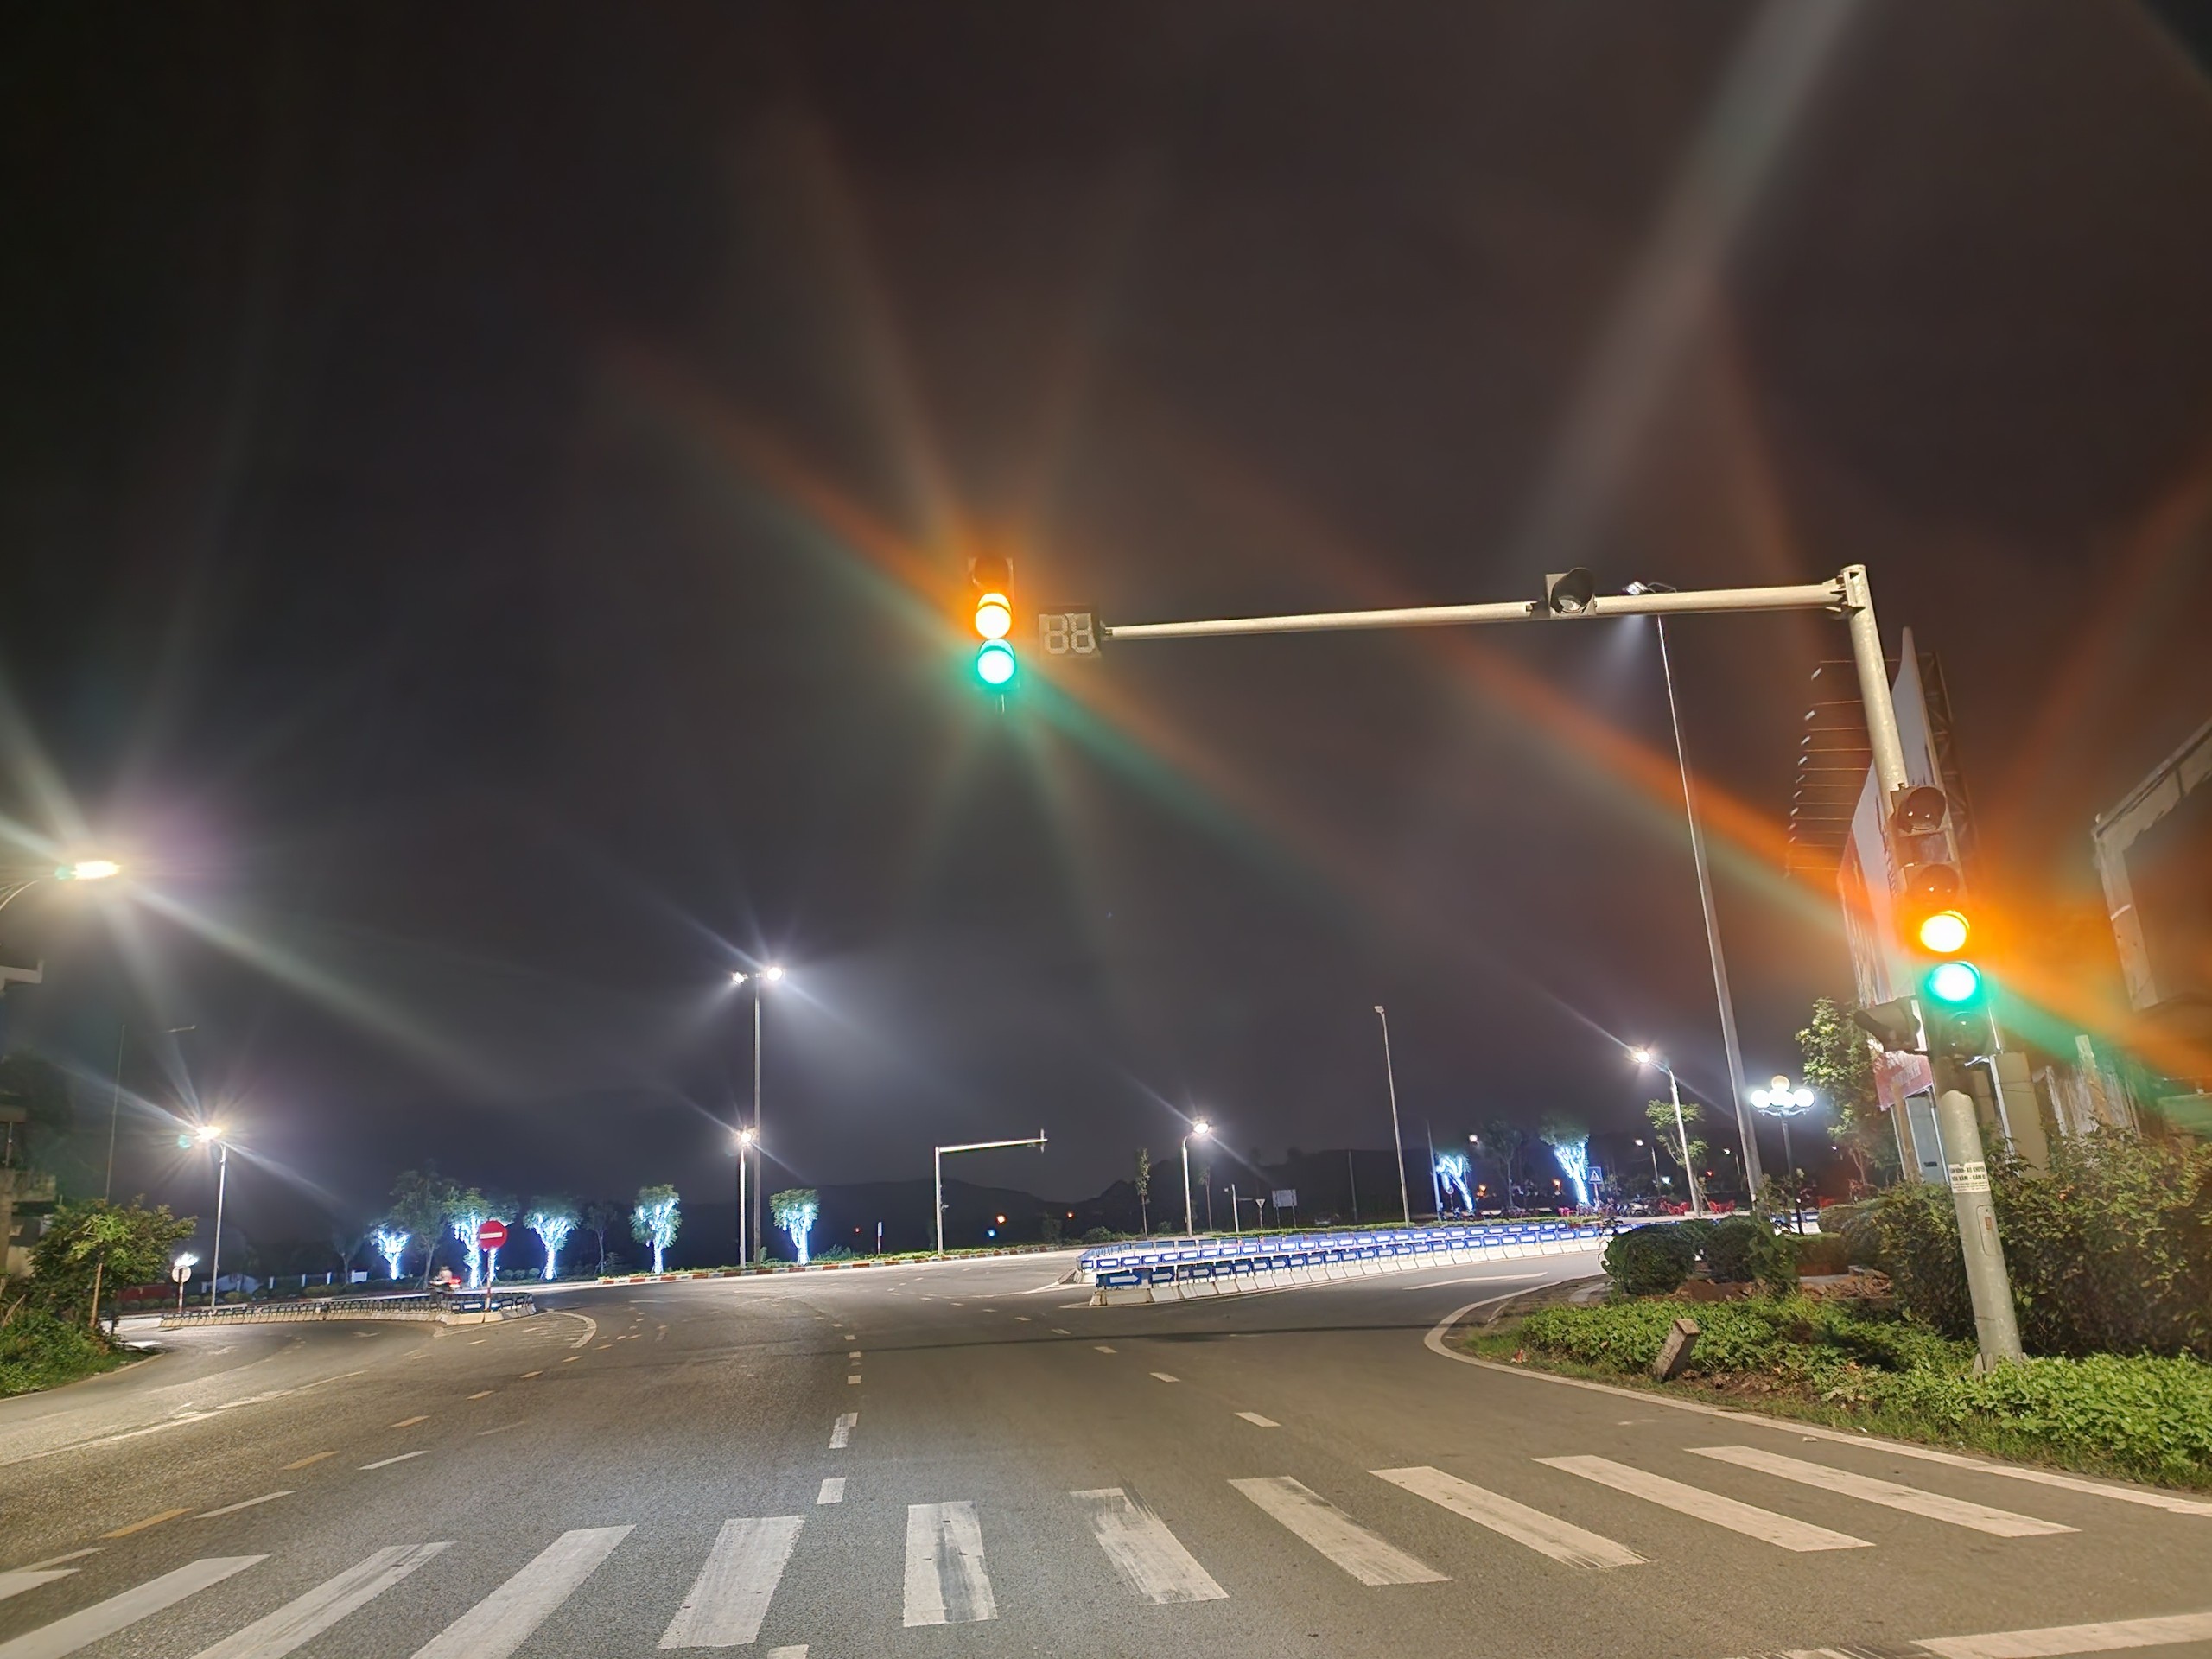 Đèn giao thông bị chập gây mất an toàn giao thông ở ngã tư đường tránh Đông Triều, cần xử lý